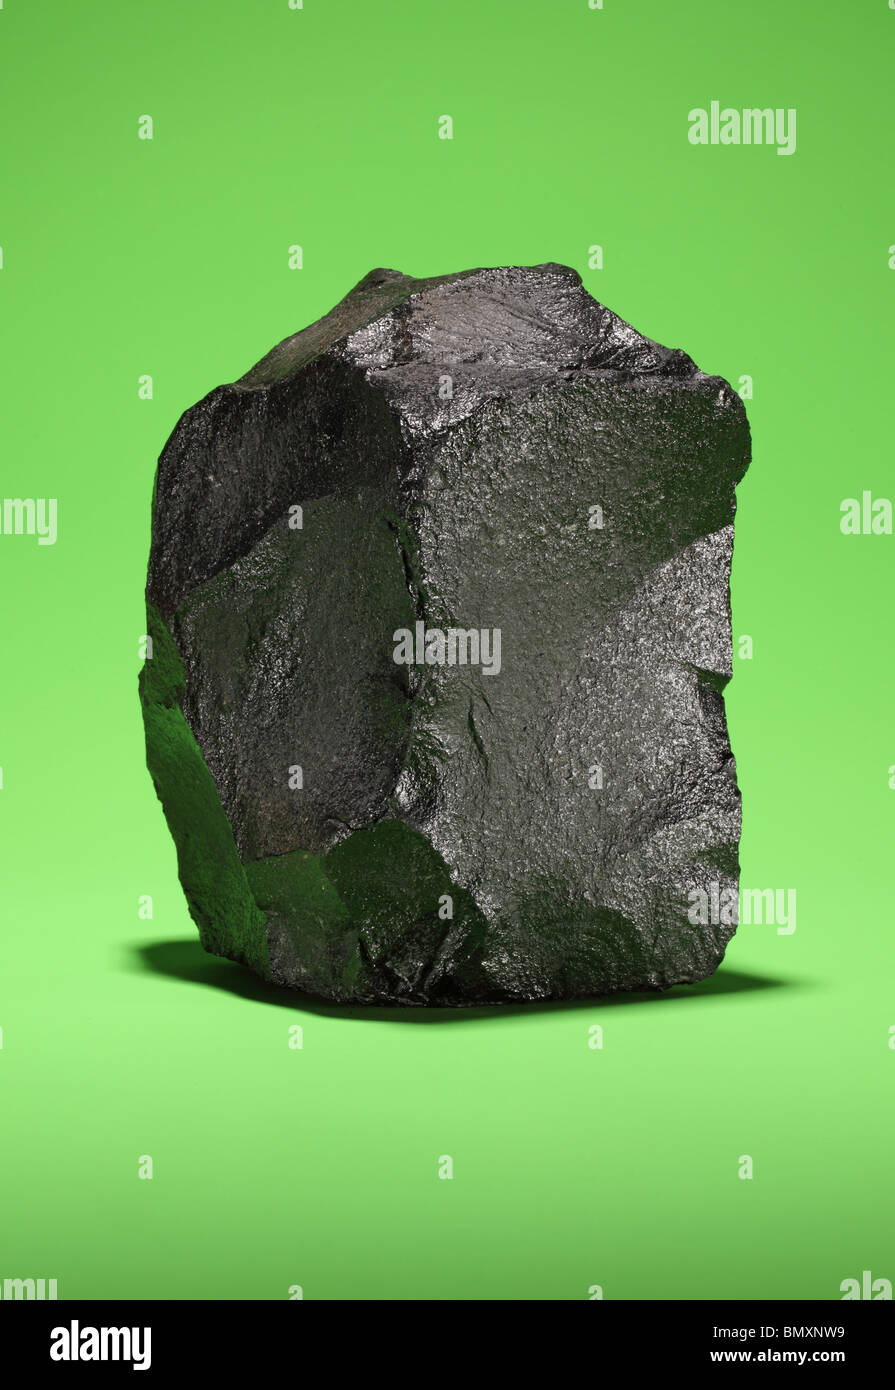 Un grand morceau de charbon bitumineux noir sur un fond vert lumineux Banque D'Images